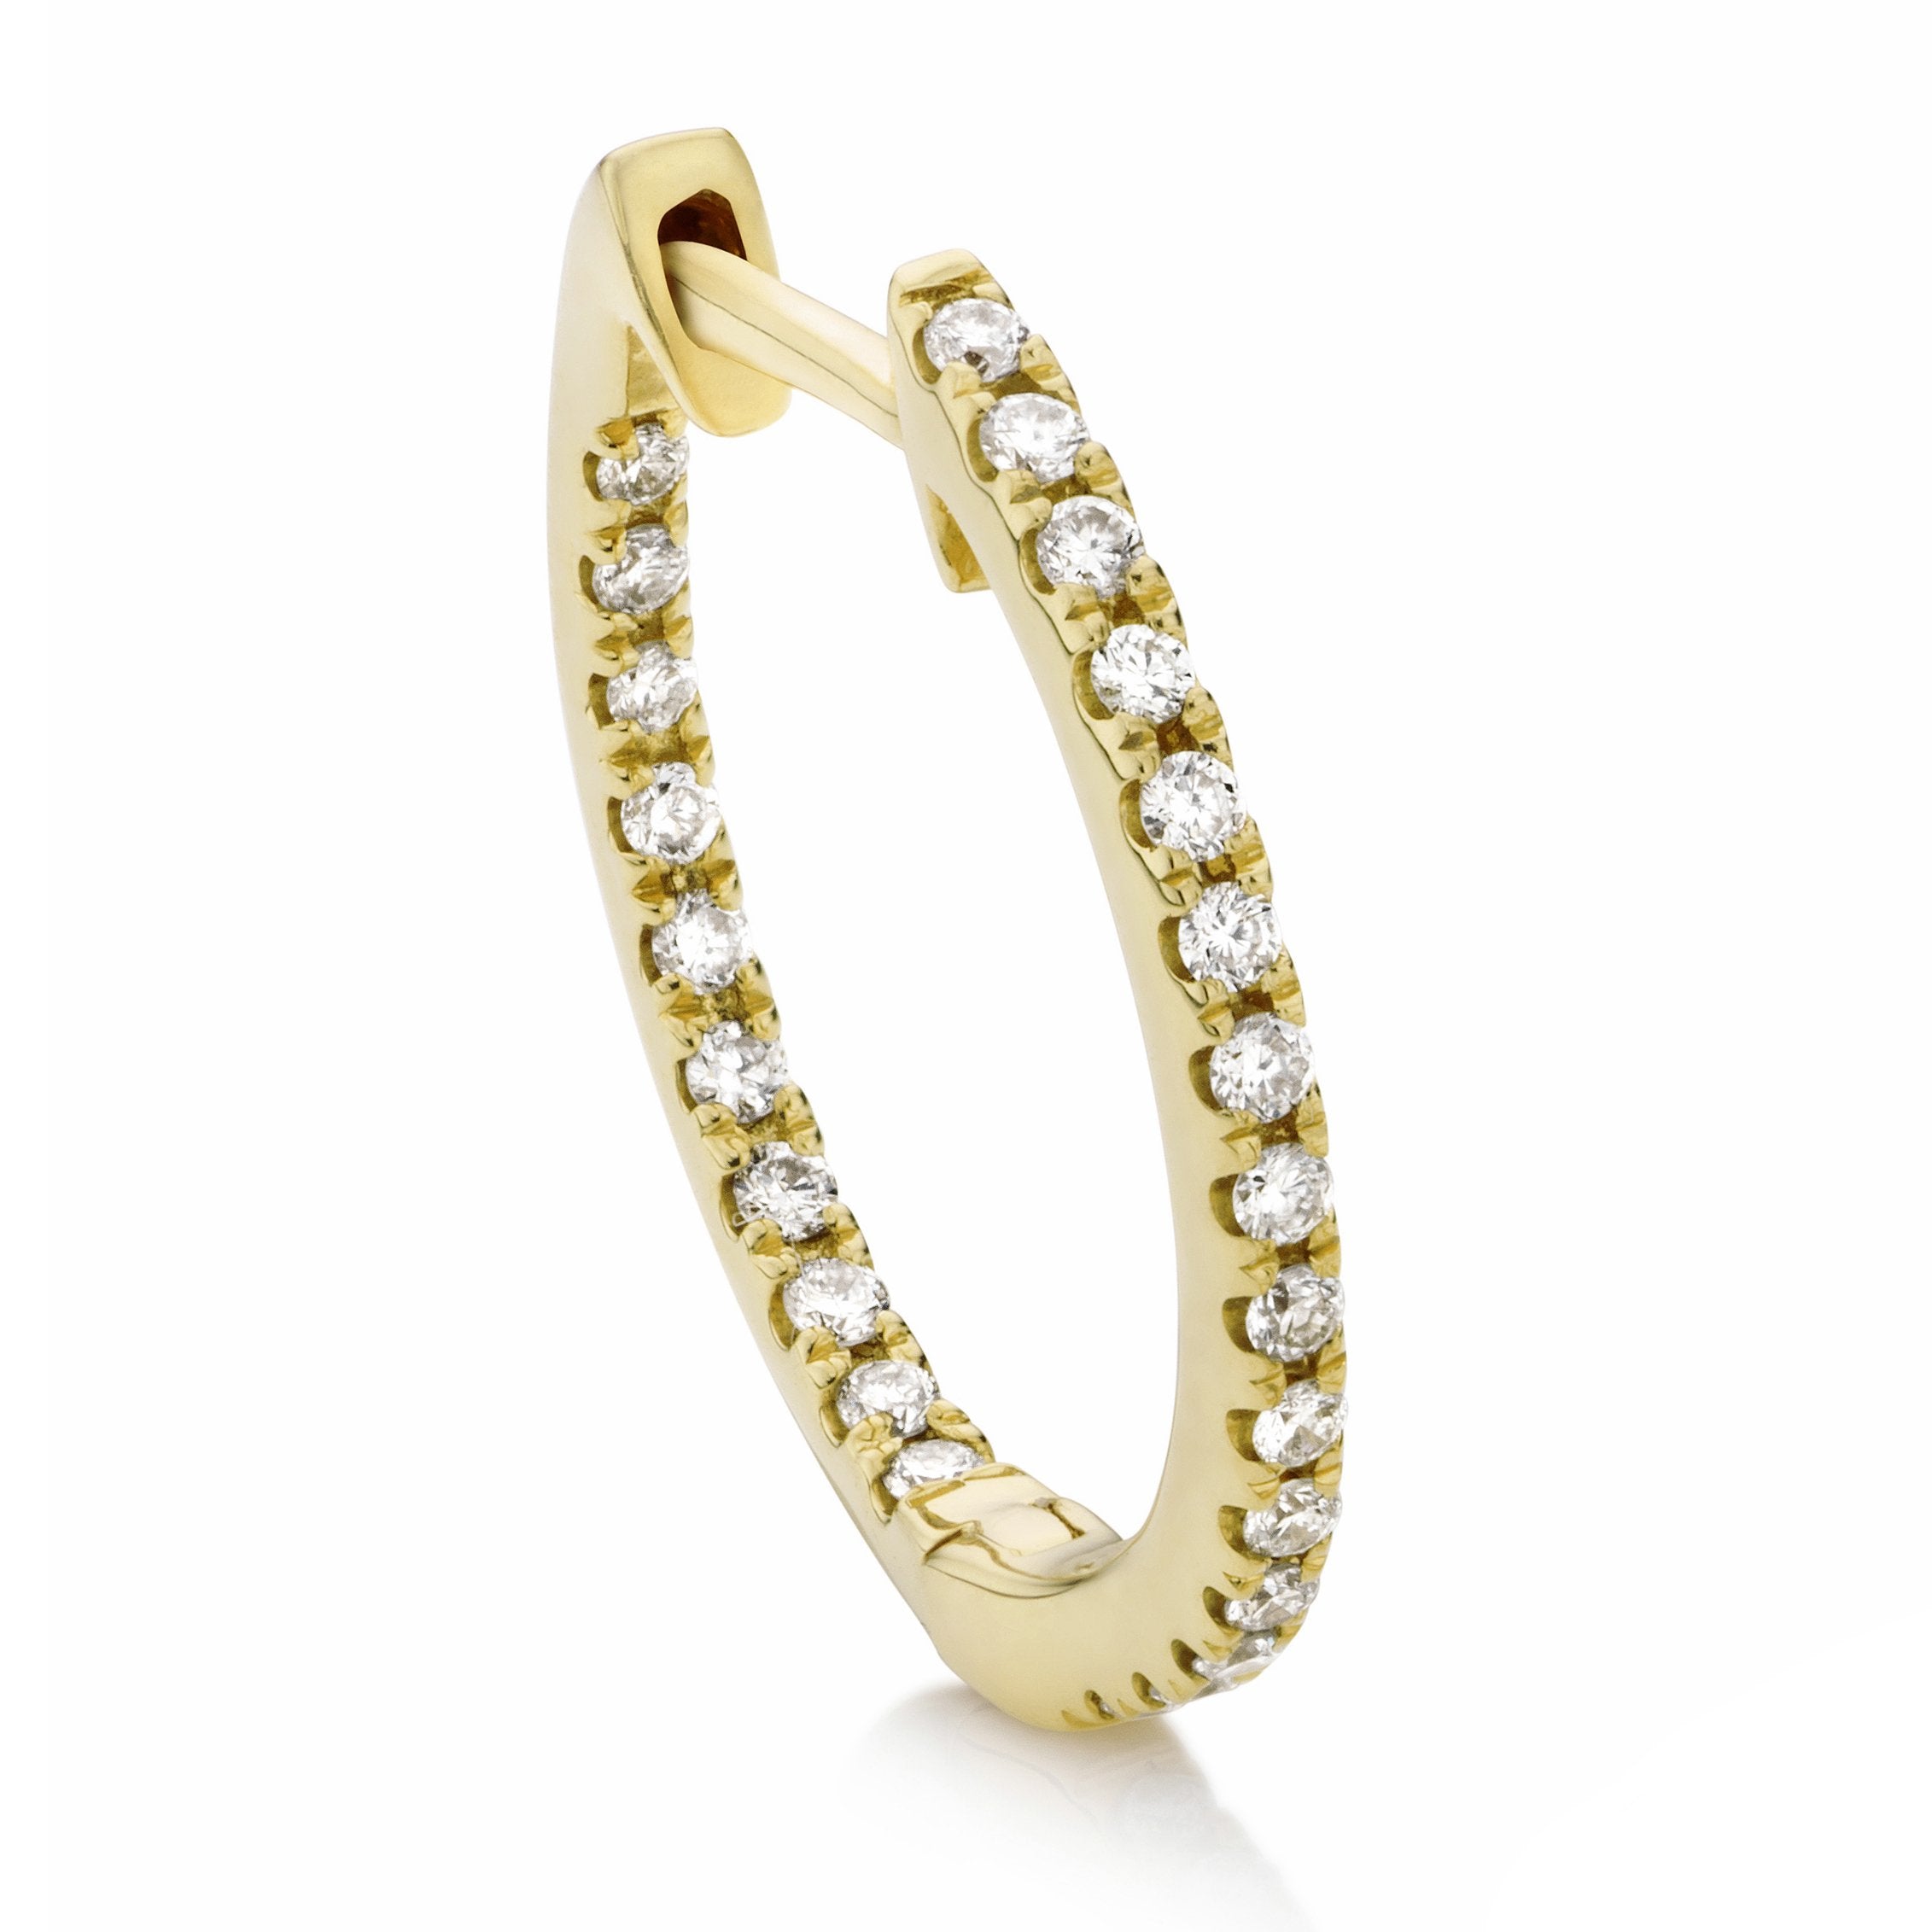 Full-set 18ct white gold diamond hoop earrings 15mm